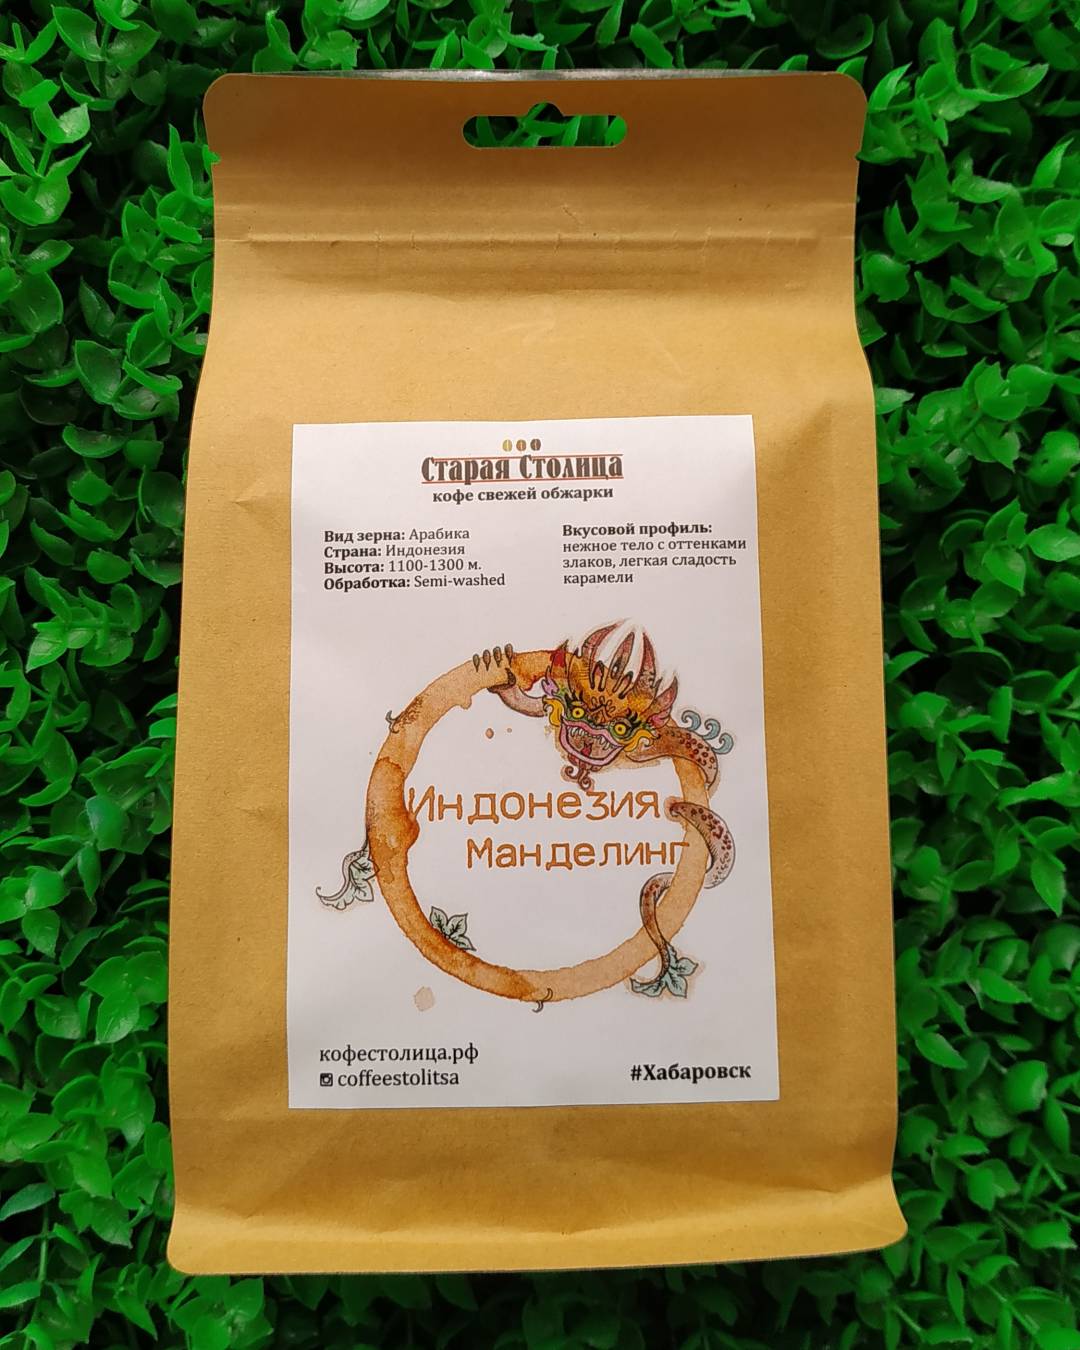 Купить онлайн Кофе плантационный Арабика Манделинг Индонезия в интернет-магазине Беришка с доставкой по Хабаровску и по России недорого.